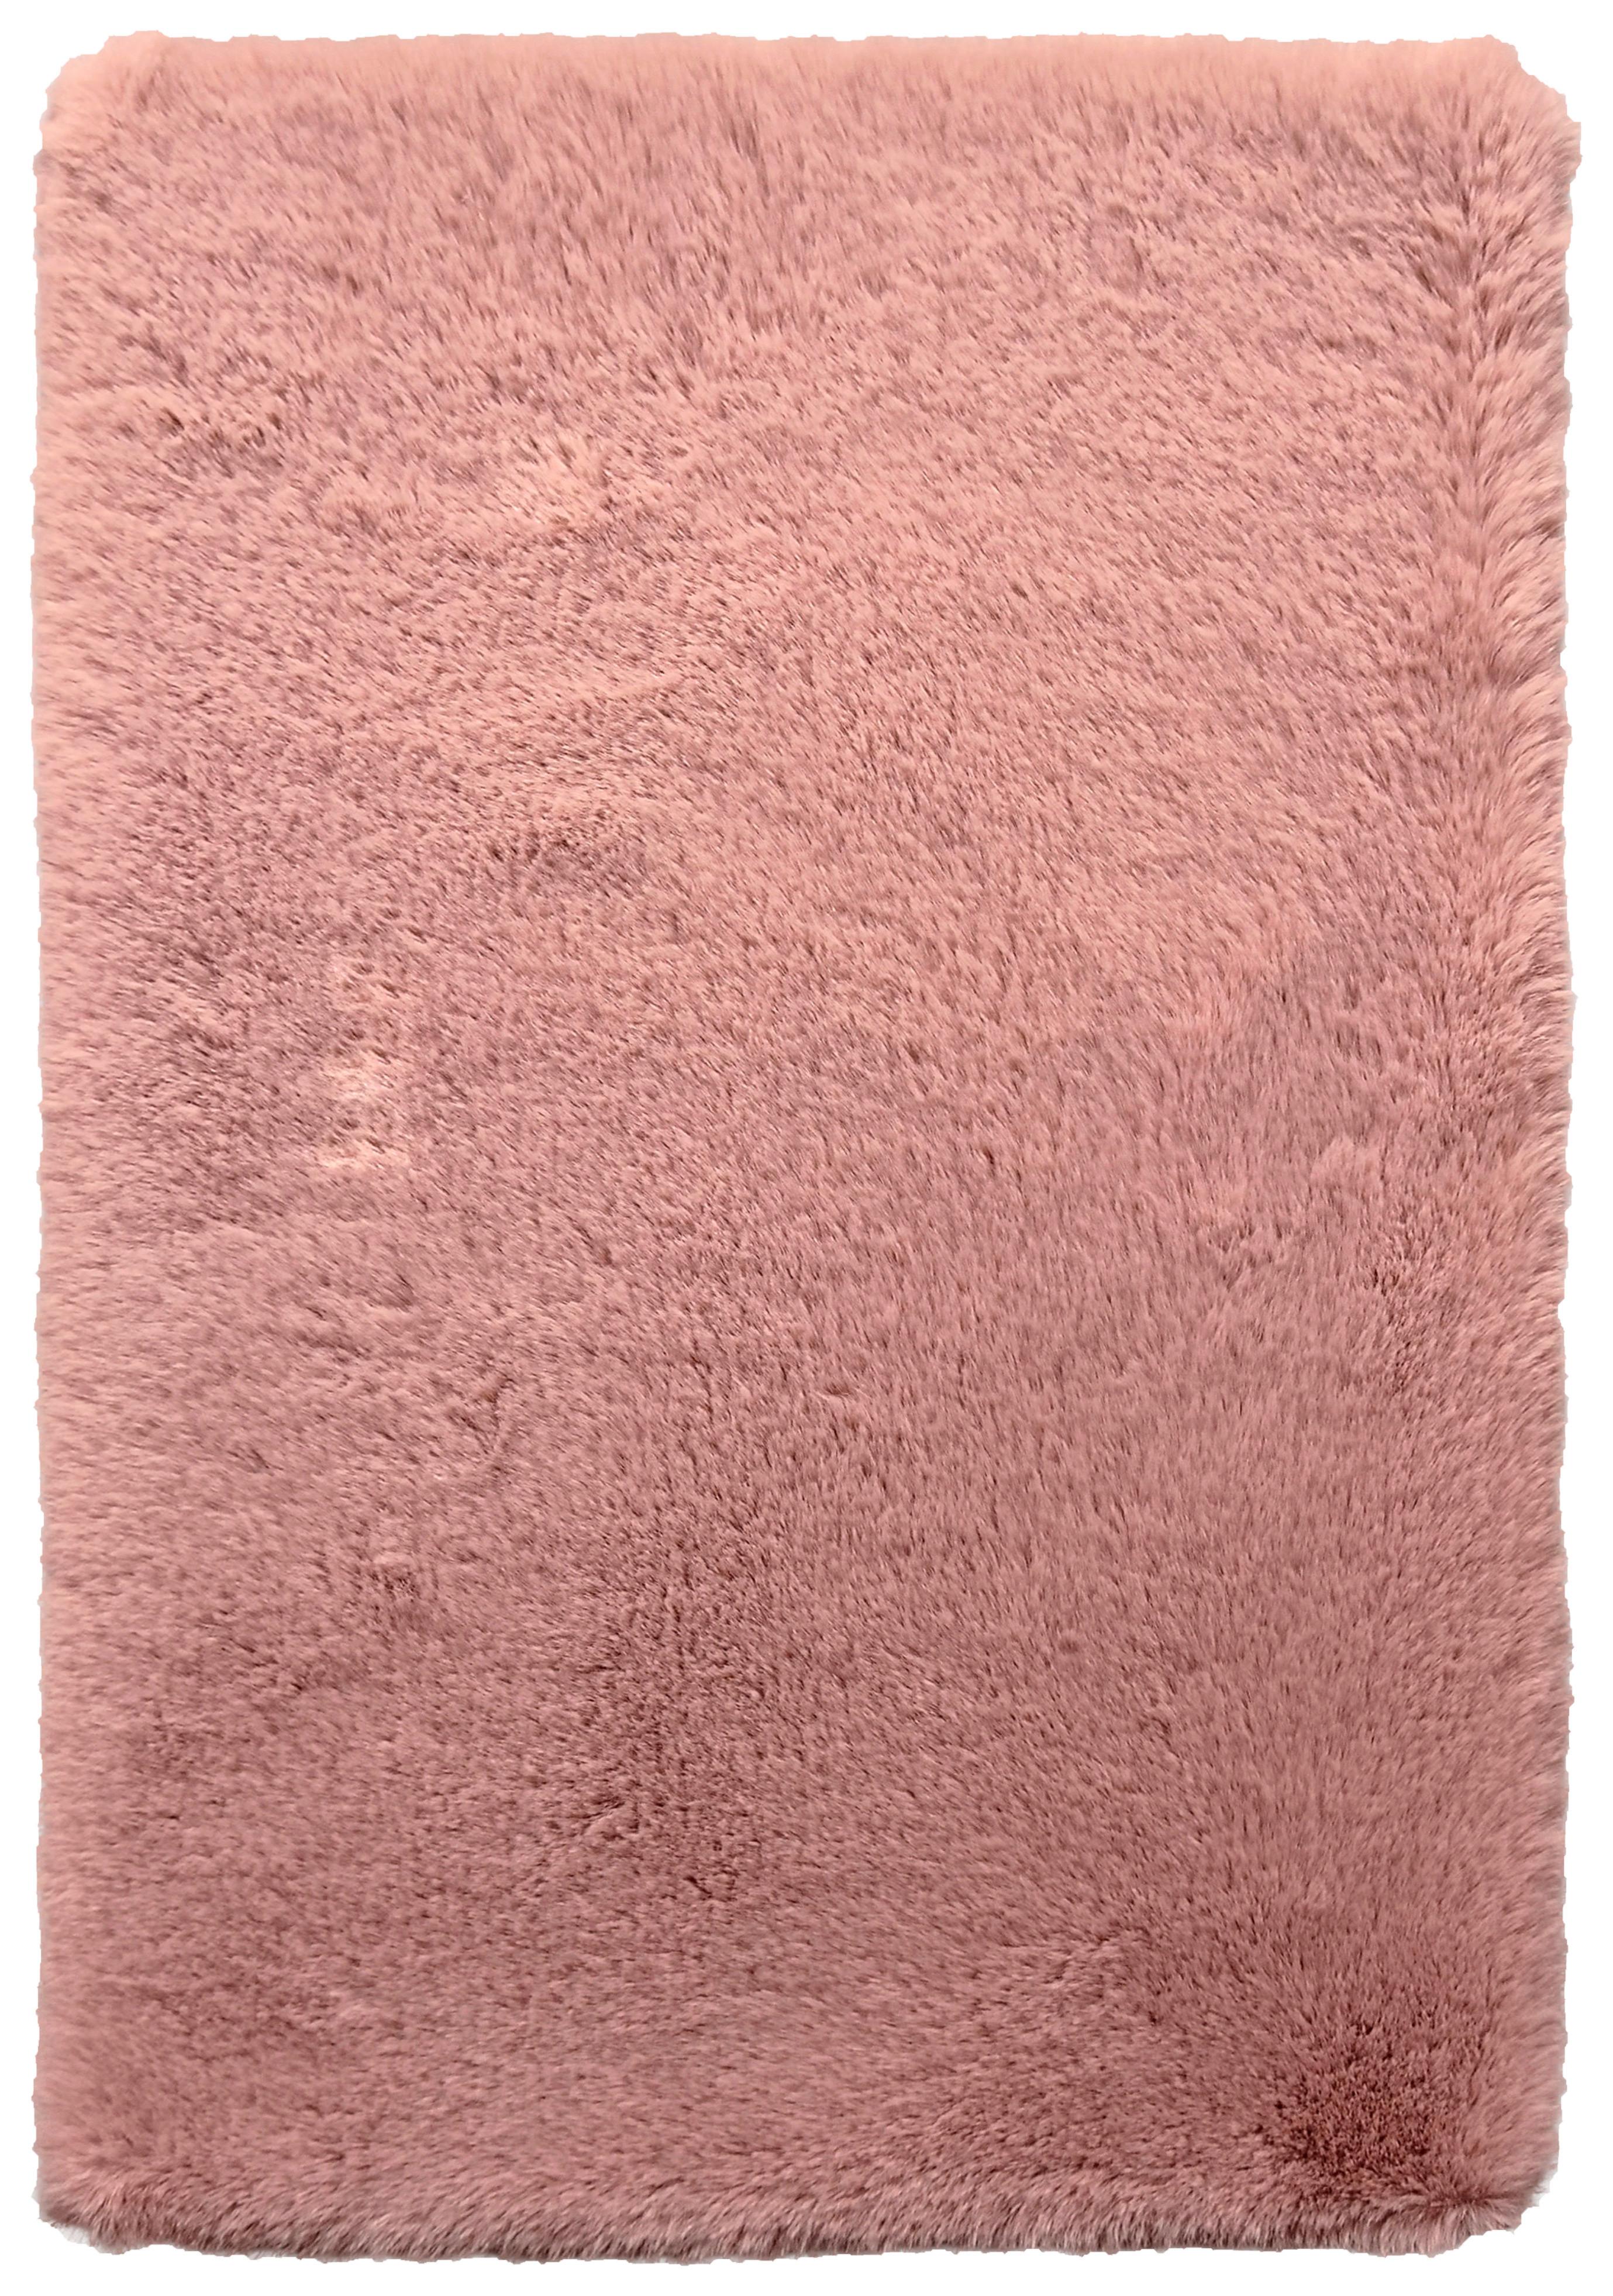 Umelá Kožušina Caroline 3, 160/220cm, Ružová - staroružová, textil (160/220cm) - Modern Living